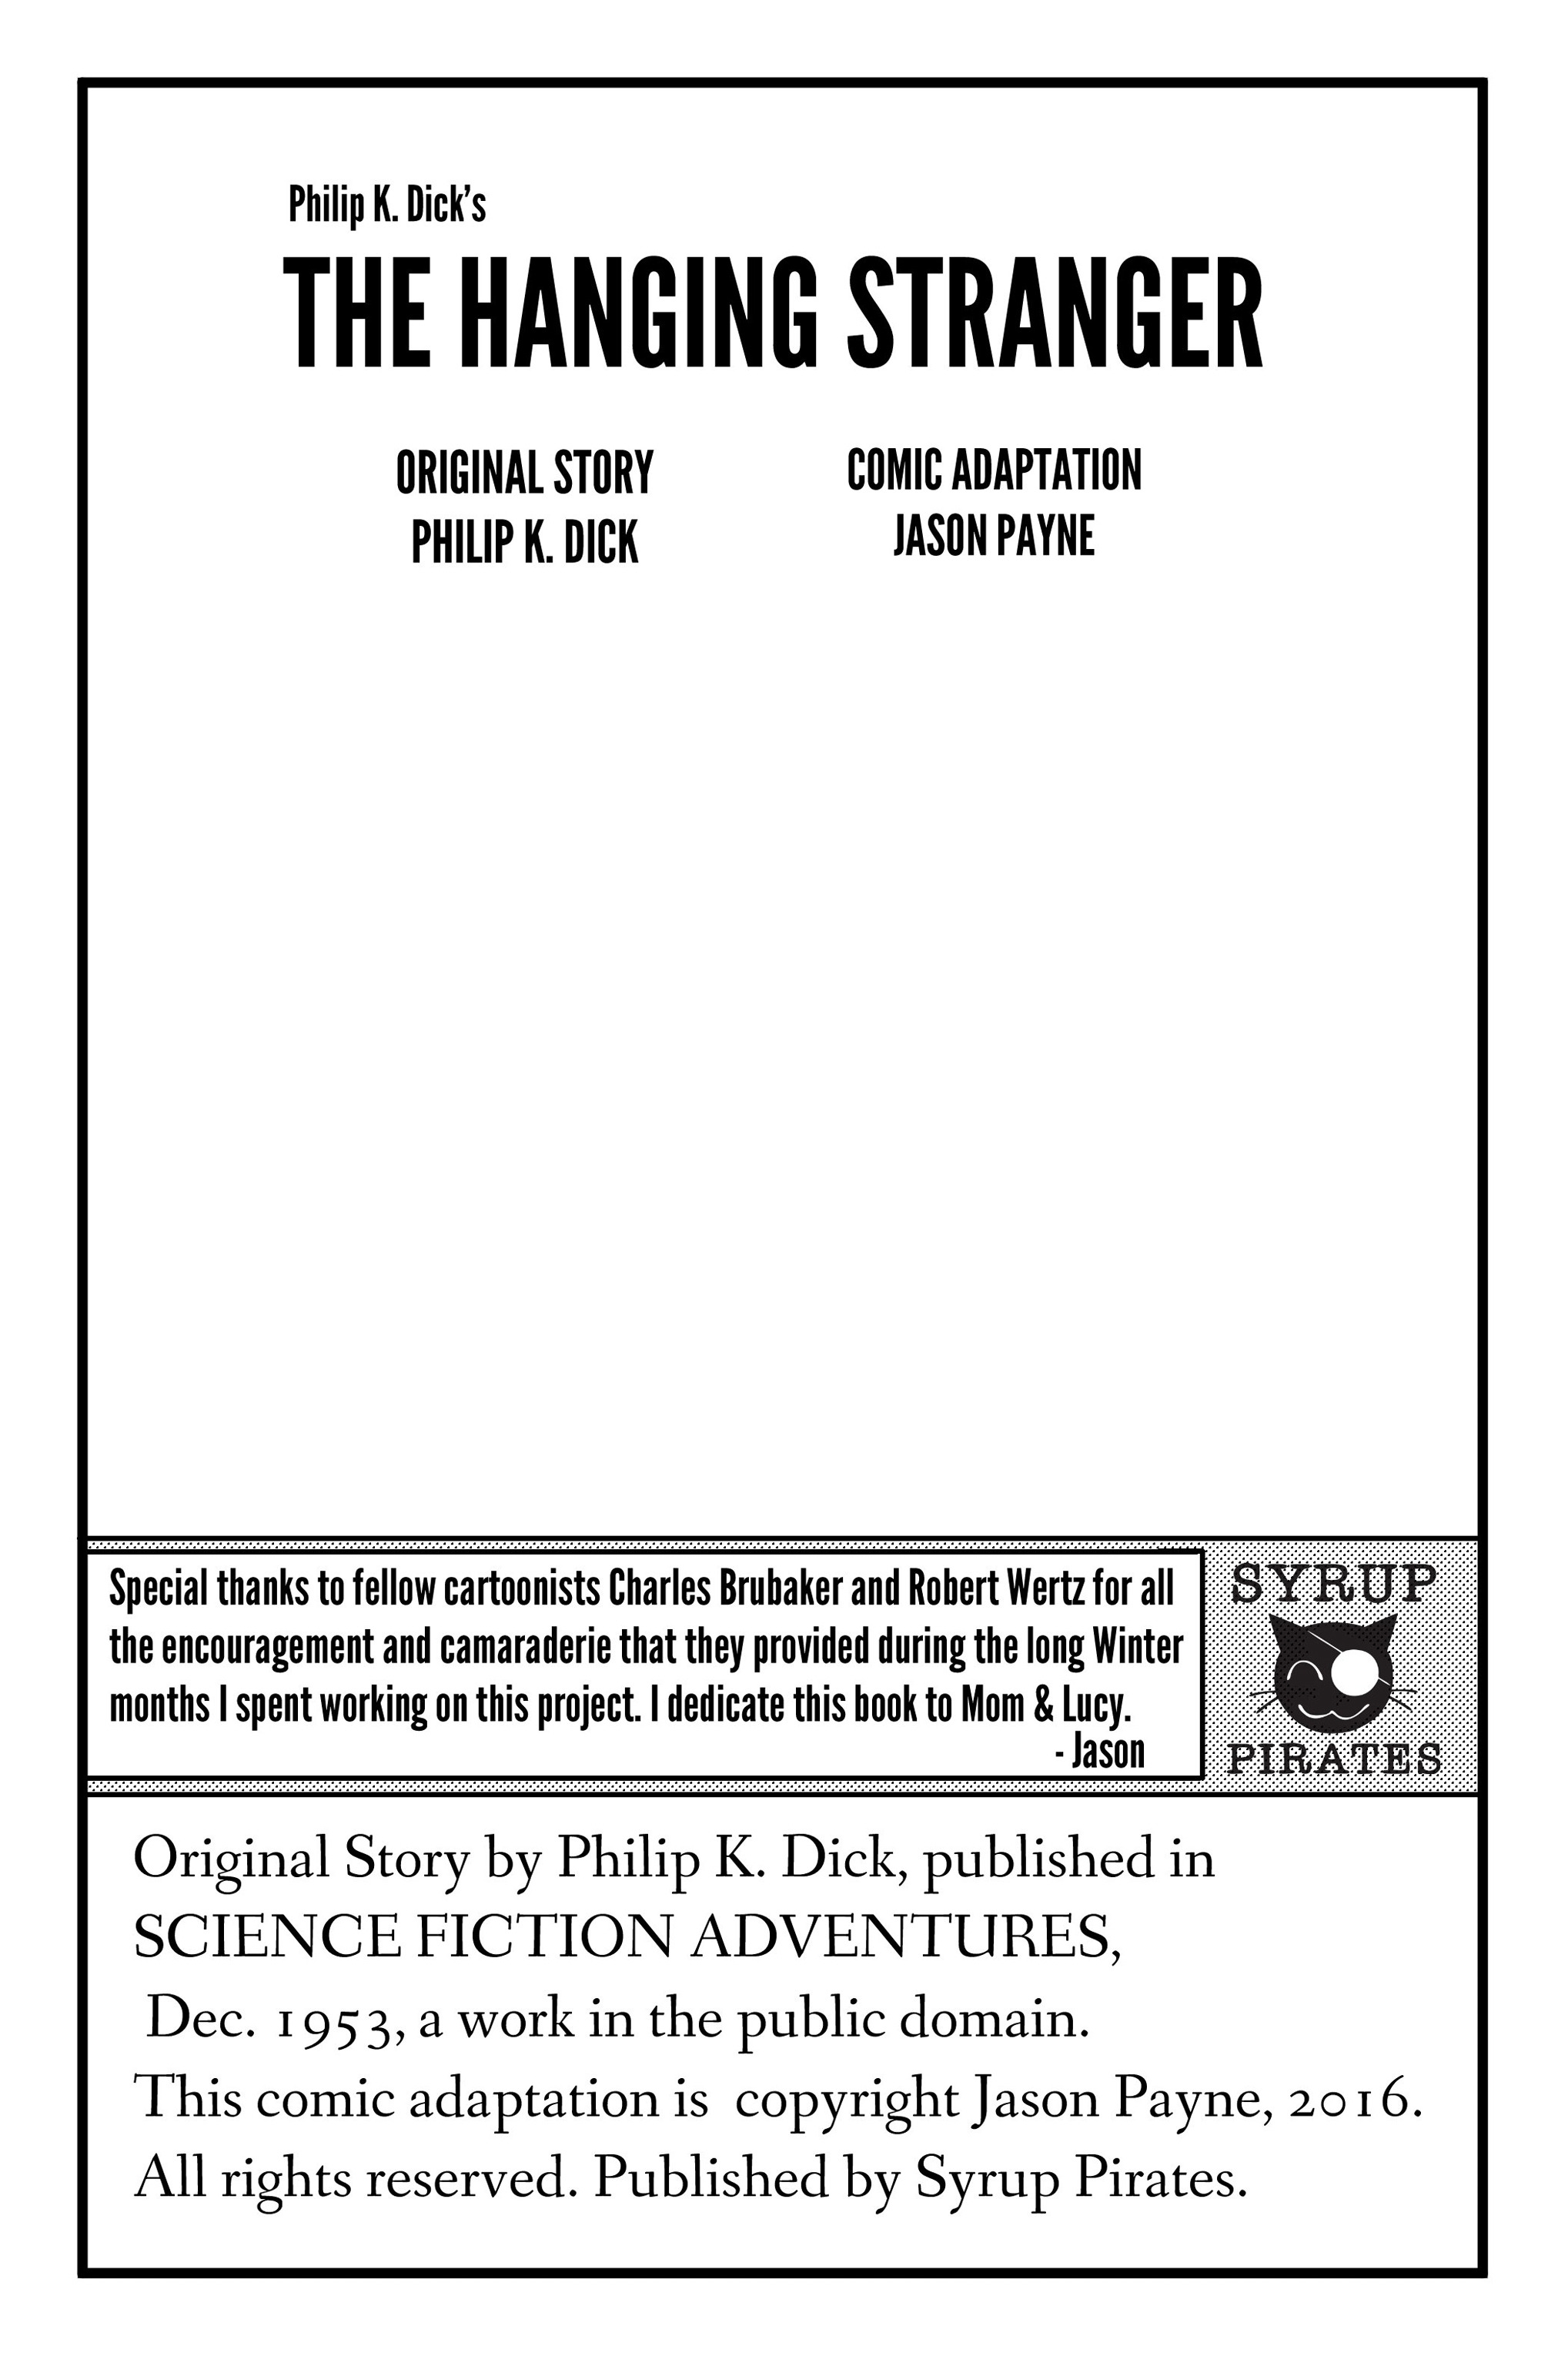 Read online Philip K. Dick's The Hanging Stranger comic -  Issue # Full - 2